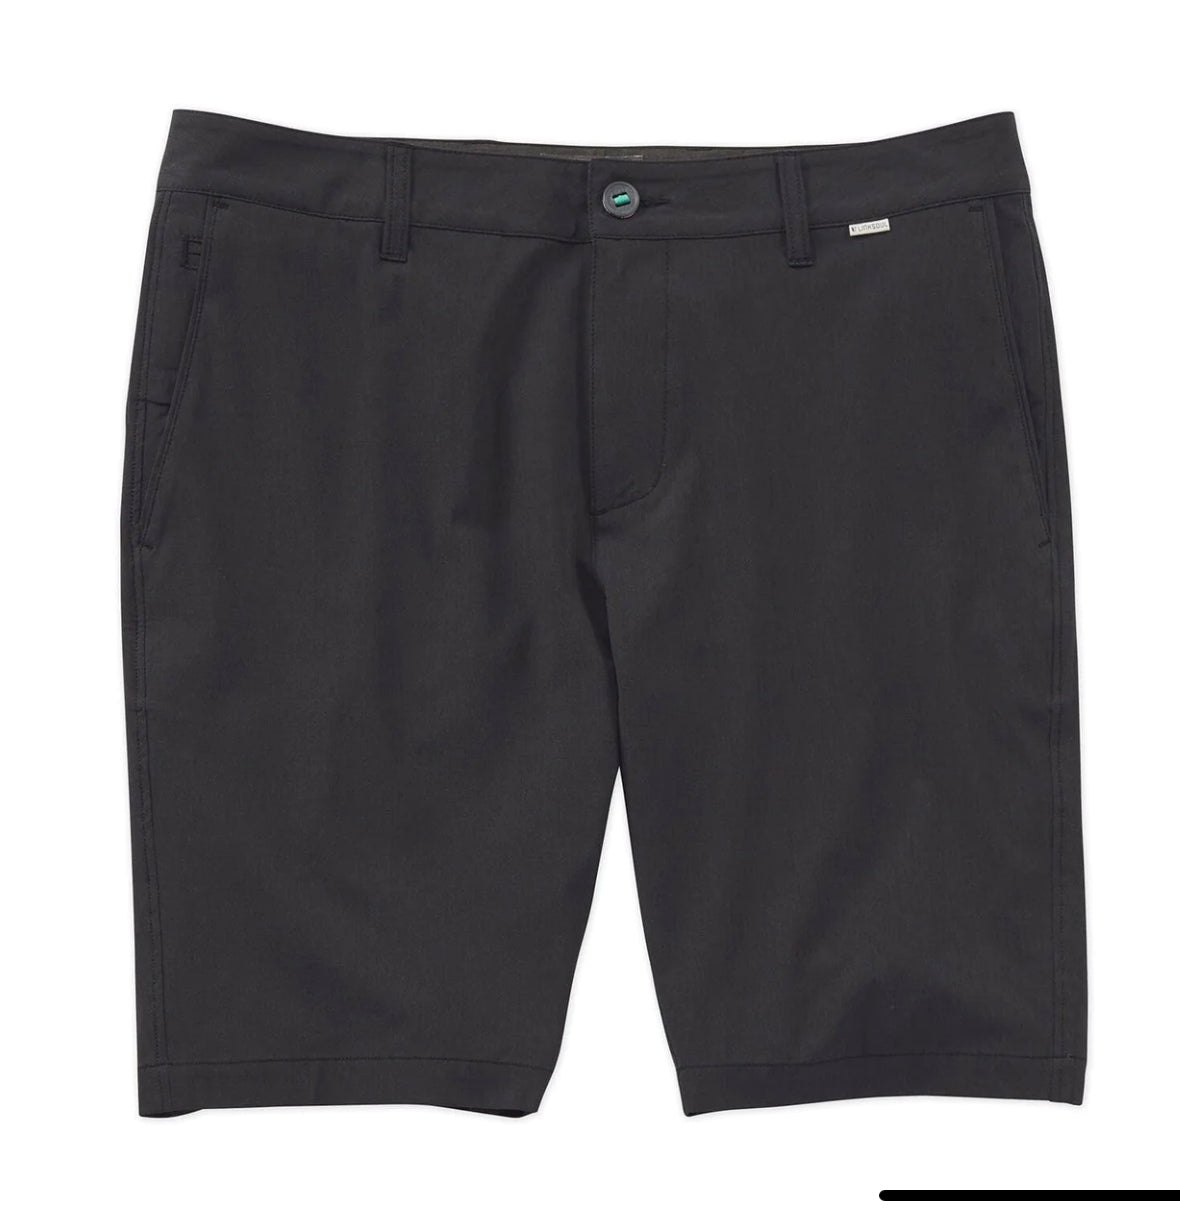 Linksoul Boardwalker Shorts TruBlack